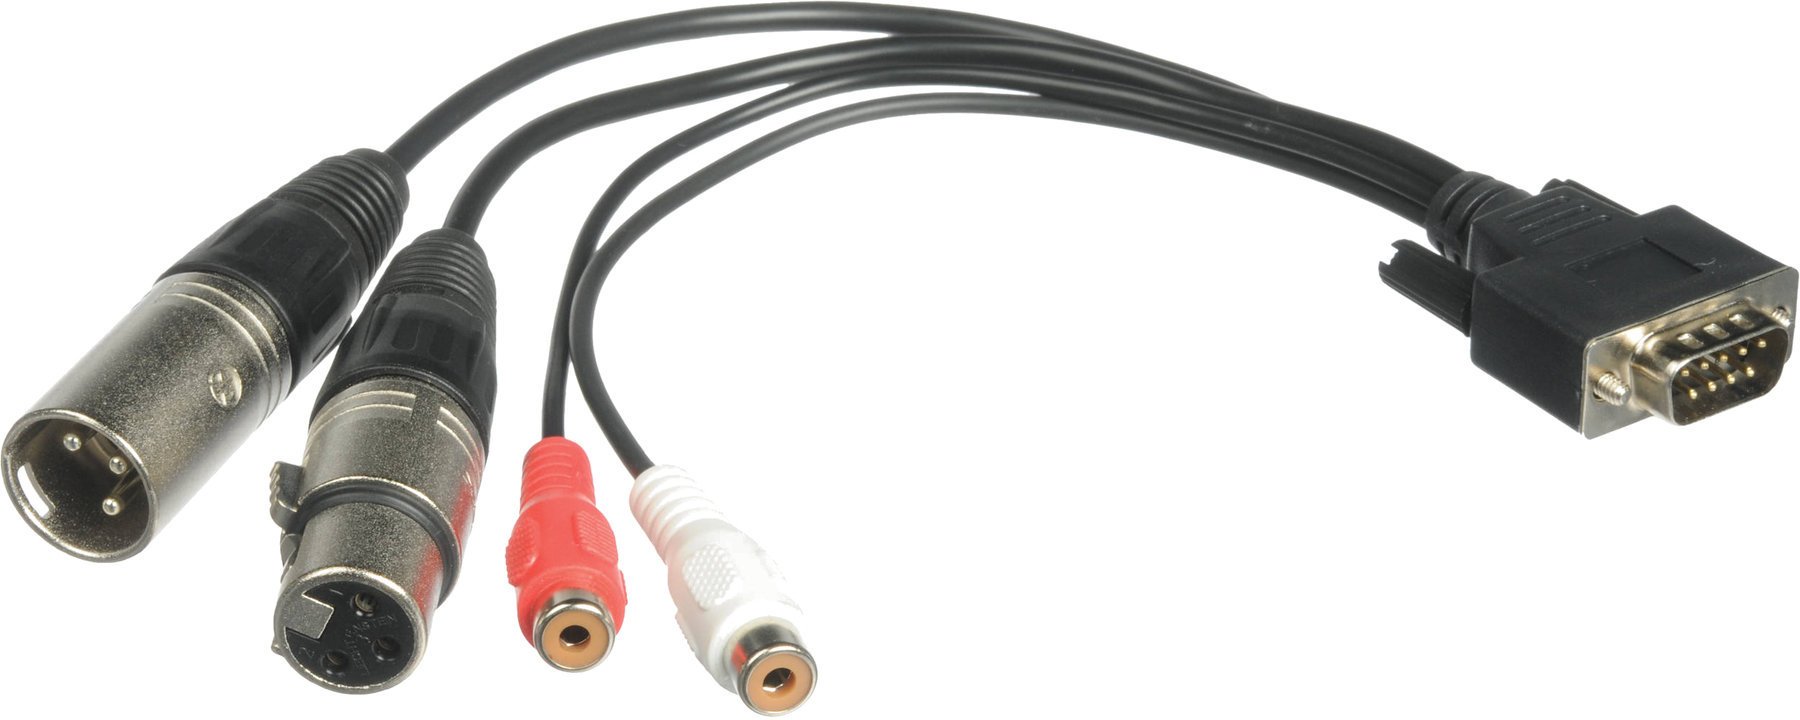 Speciale kabel RME BO968 20 cm Speciale kabel